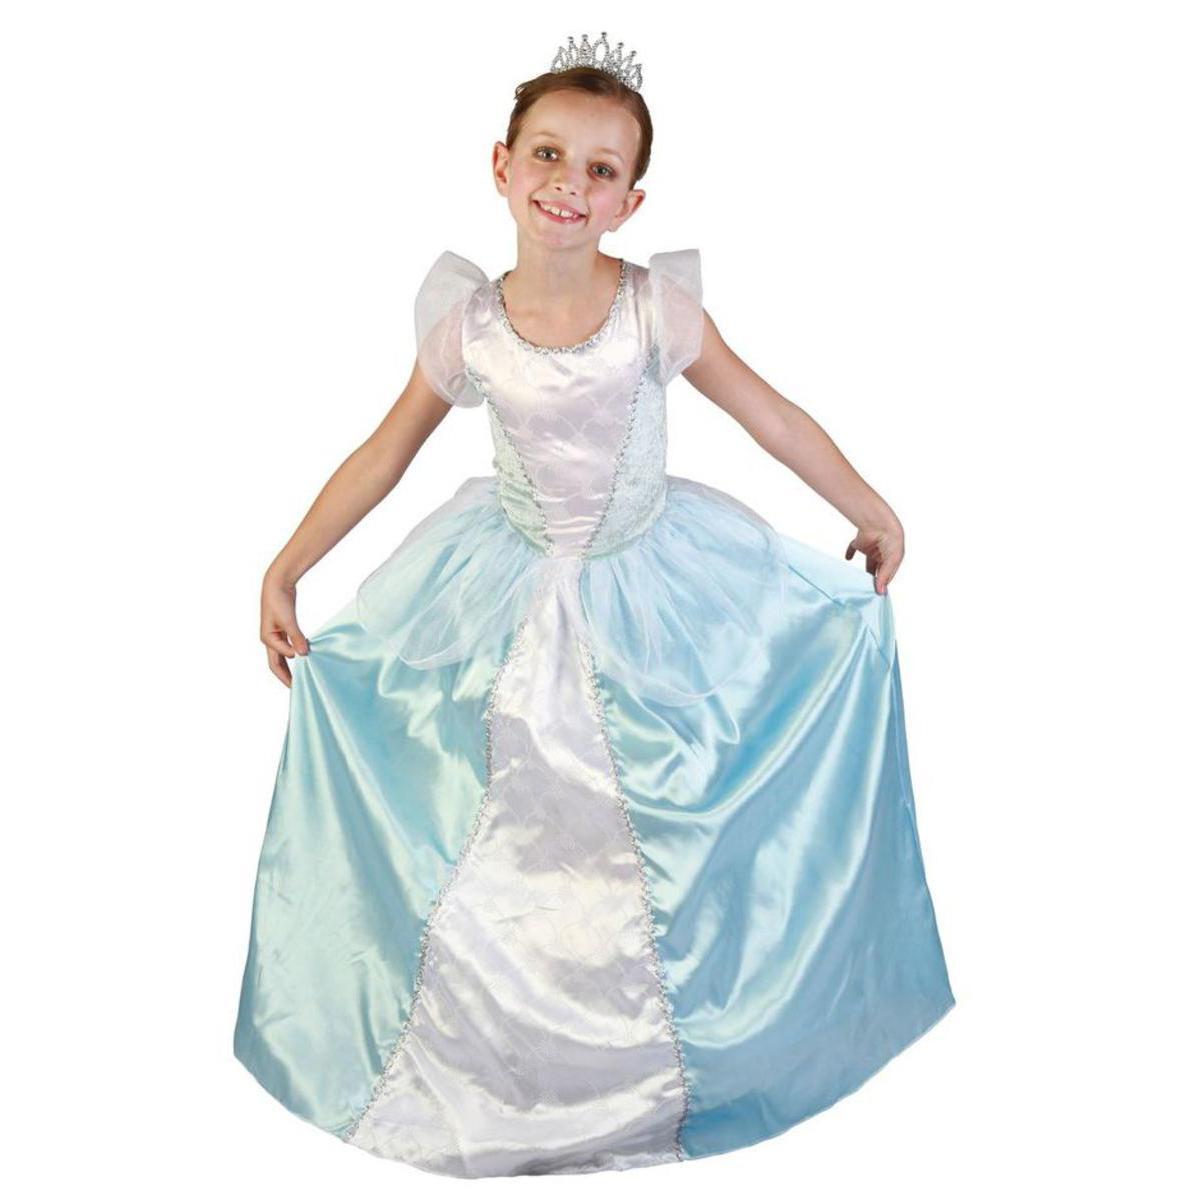 Costume enfant princesse en polyester - S - Bleu